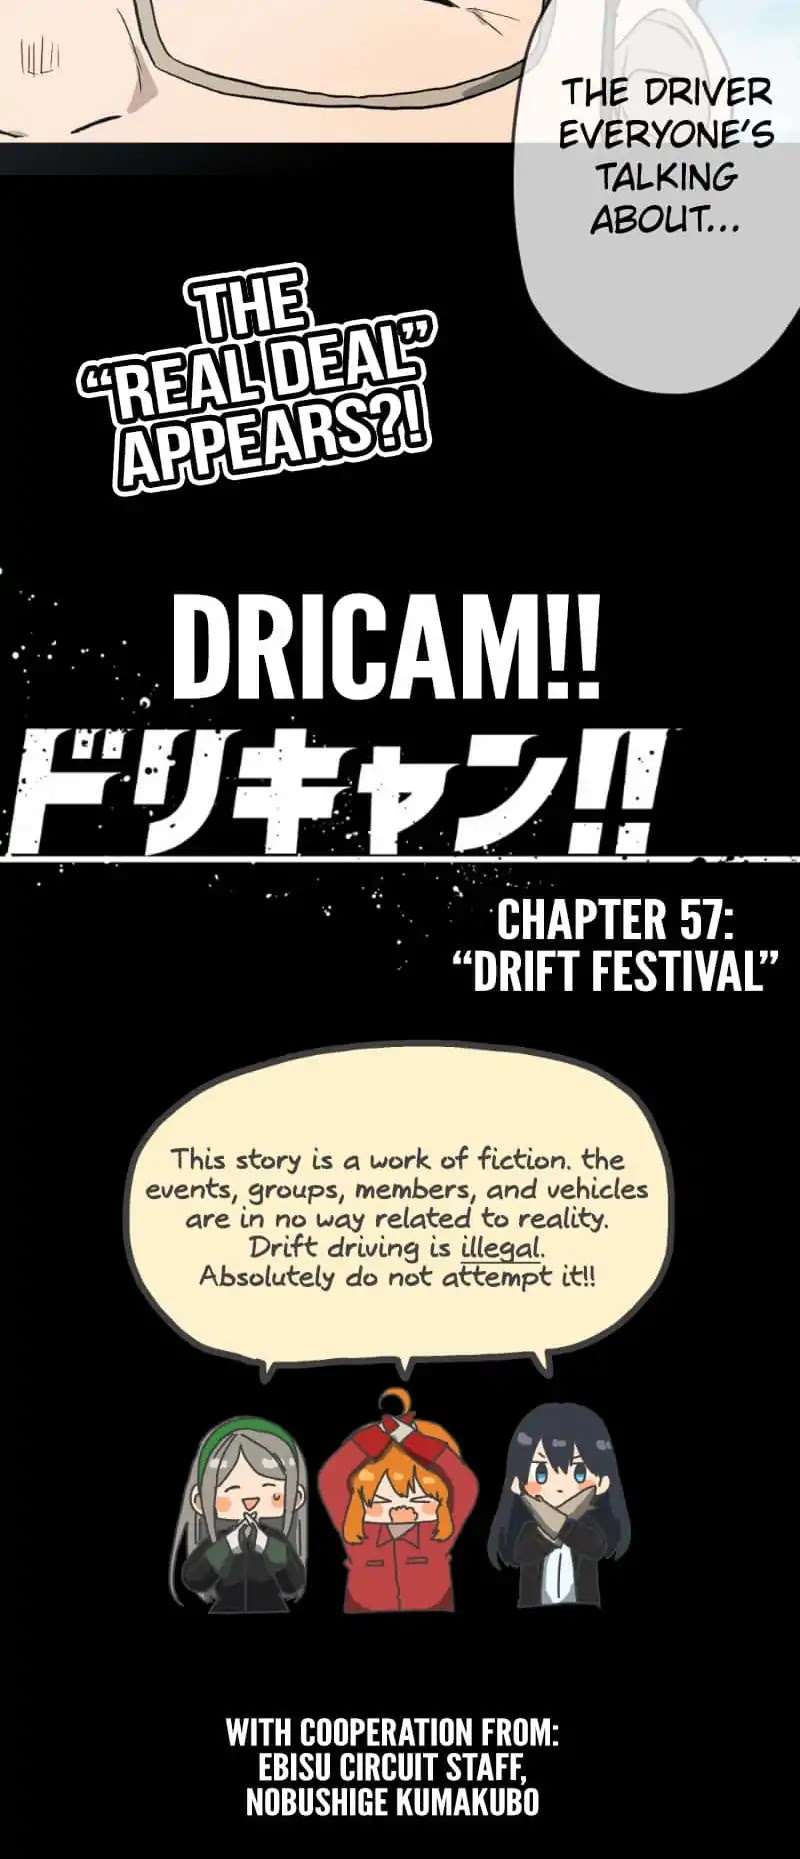 Dricam!! Chapter 57: Drift Festival